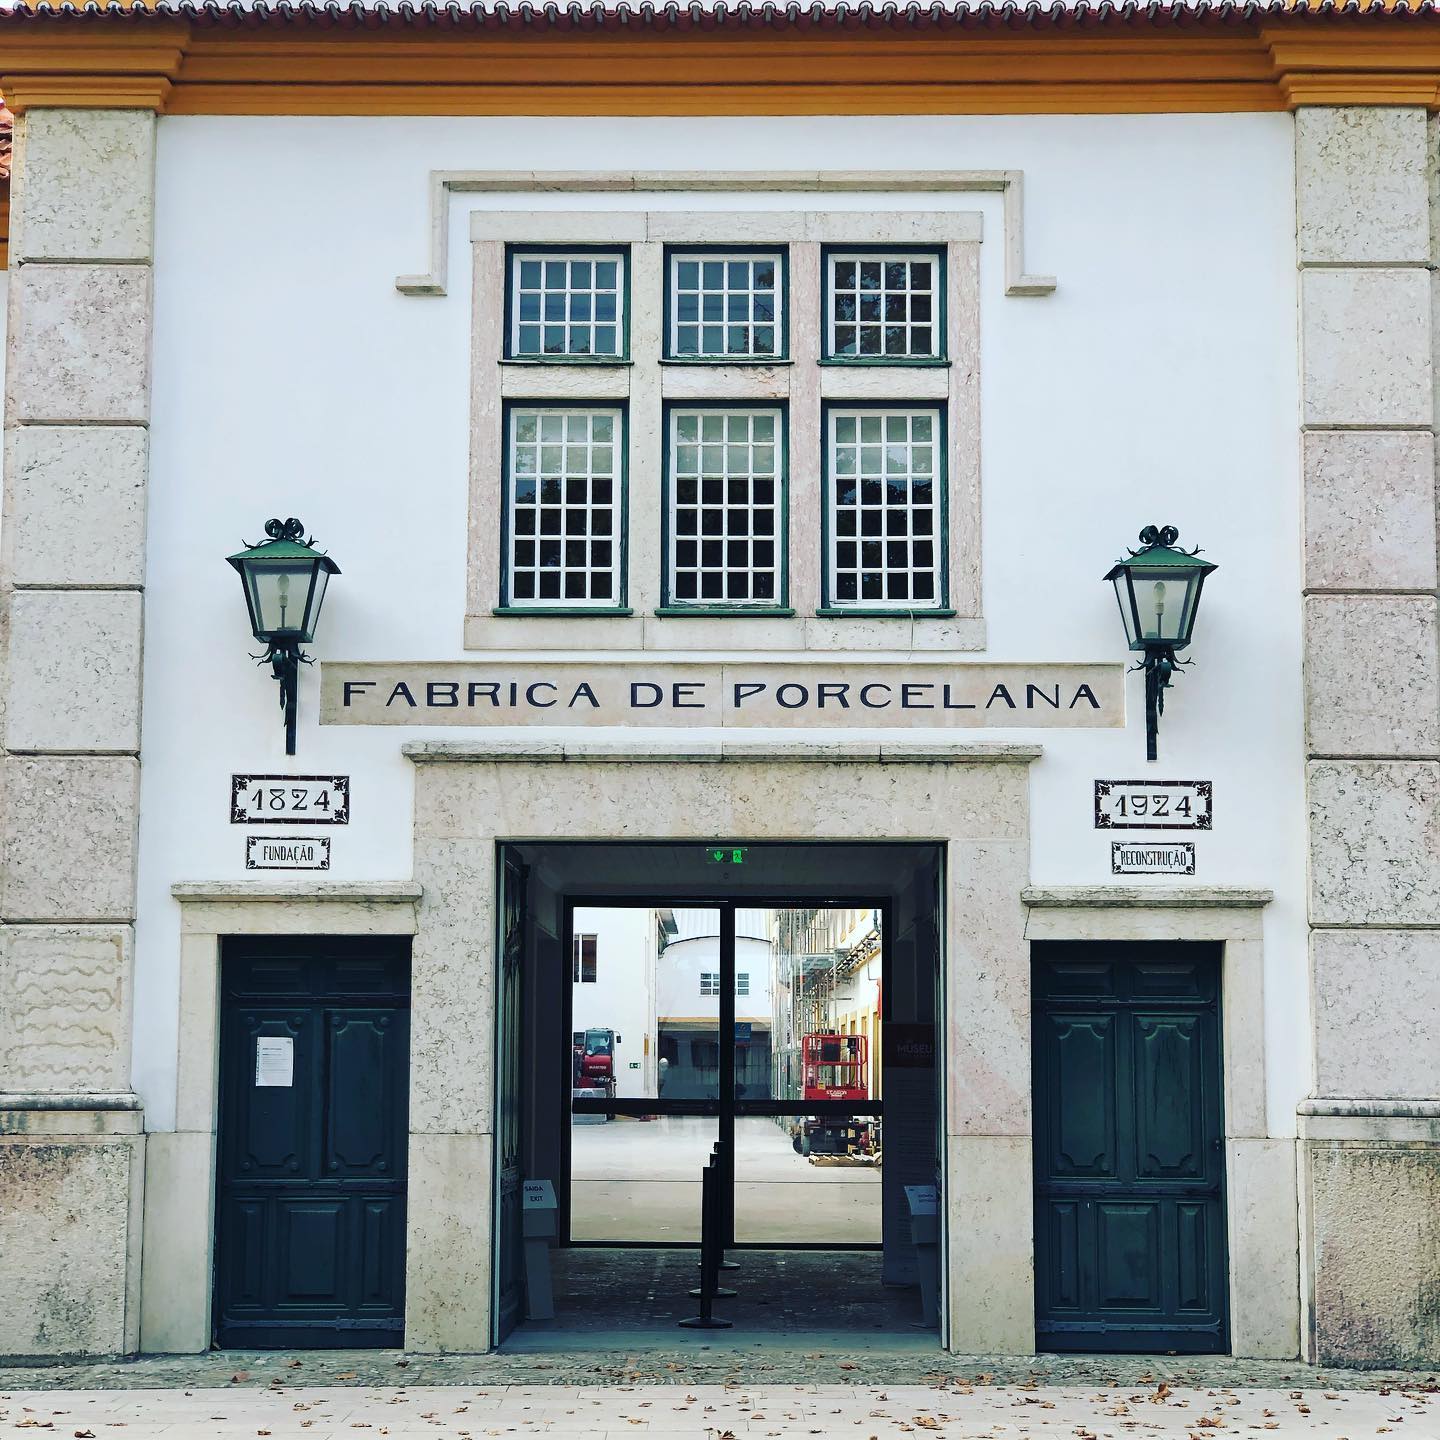 #vistaalegre Un endroit magnifique à visiter lors de votre passage au Portugal. A beautiful place to visit when in Portugal.